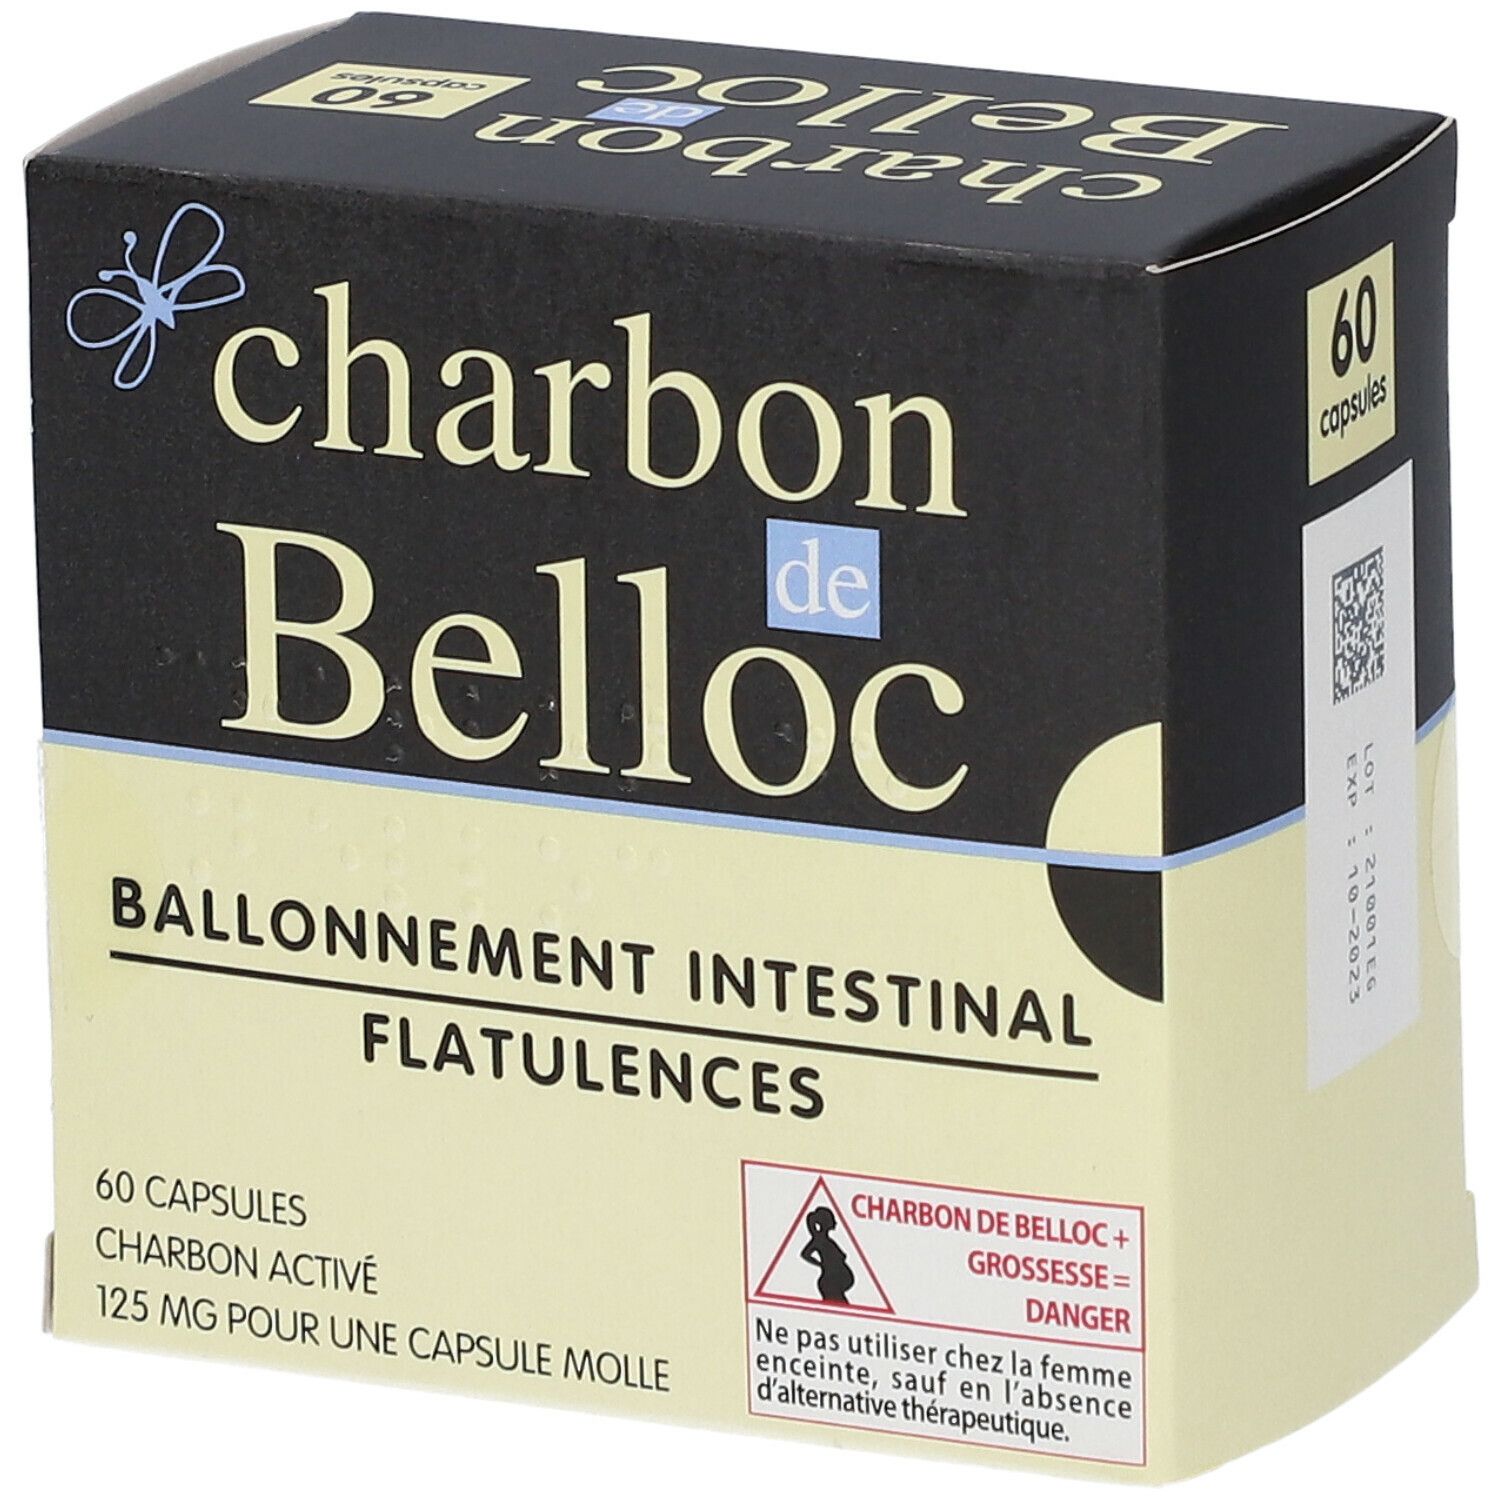 Charbon Belloc 60 caps, Ballonnements - IllicoPharma